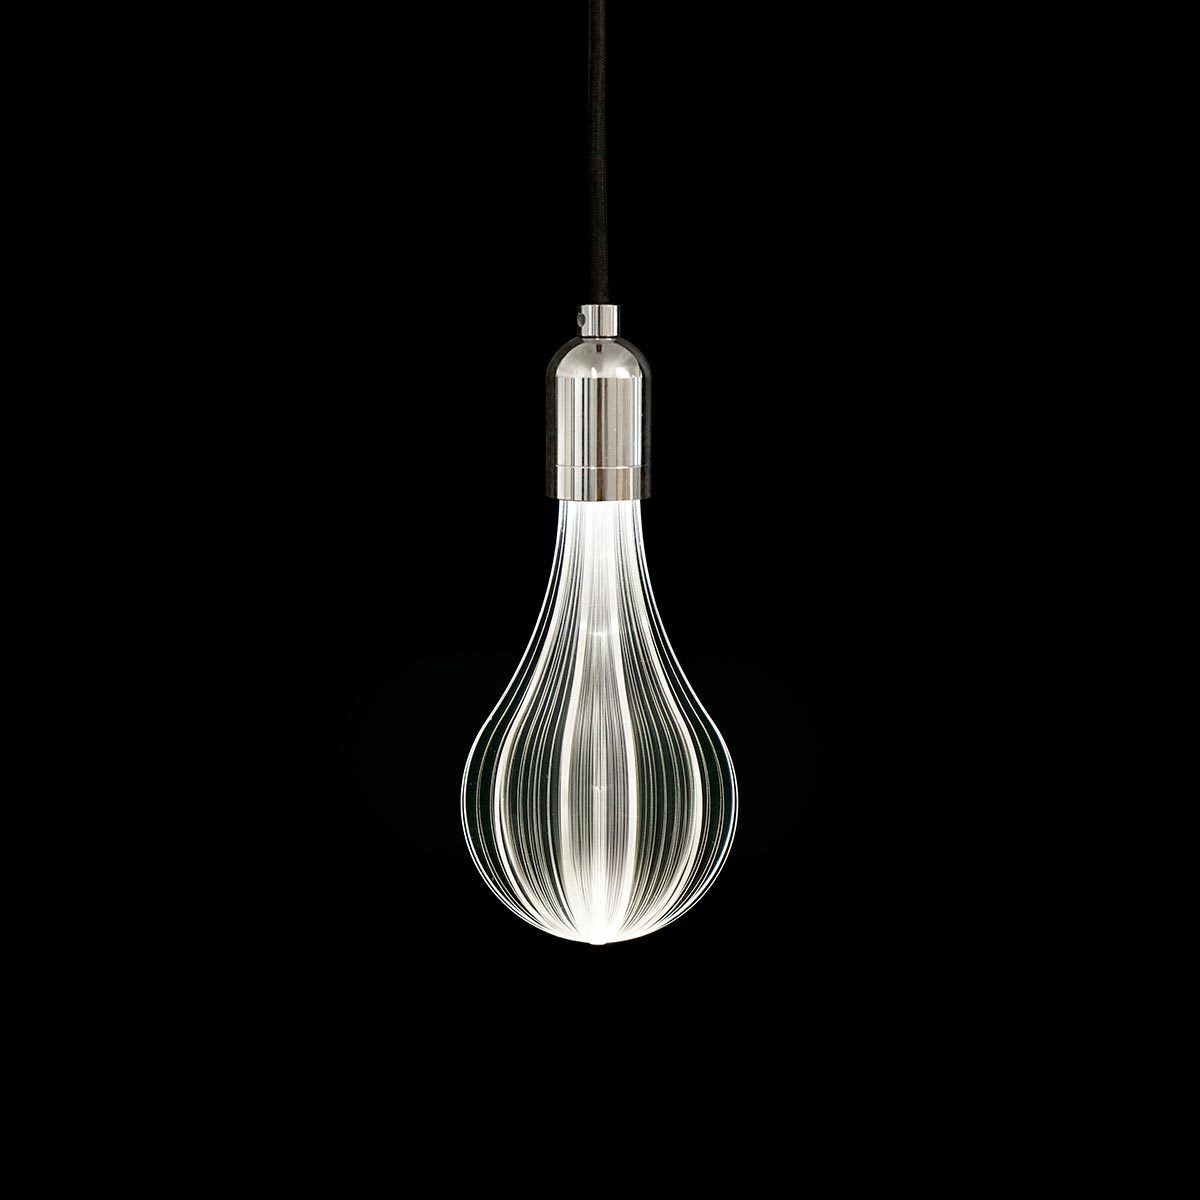 Ampoule LED plexiglass transparent E27 blanc chaud BONNIE MOON H21cm - REDDECO.com